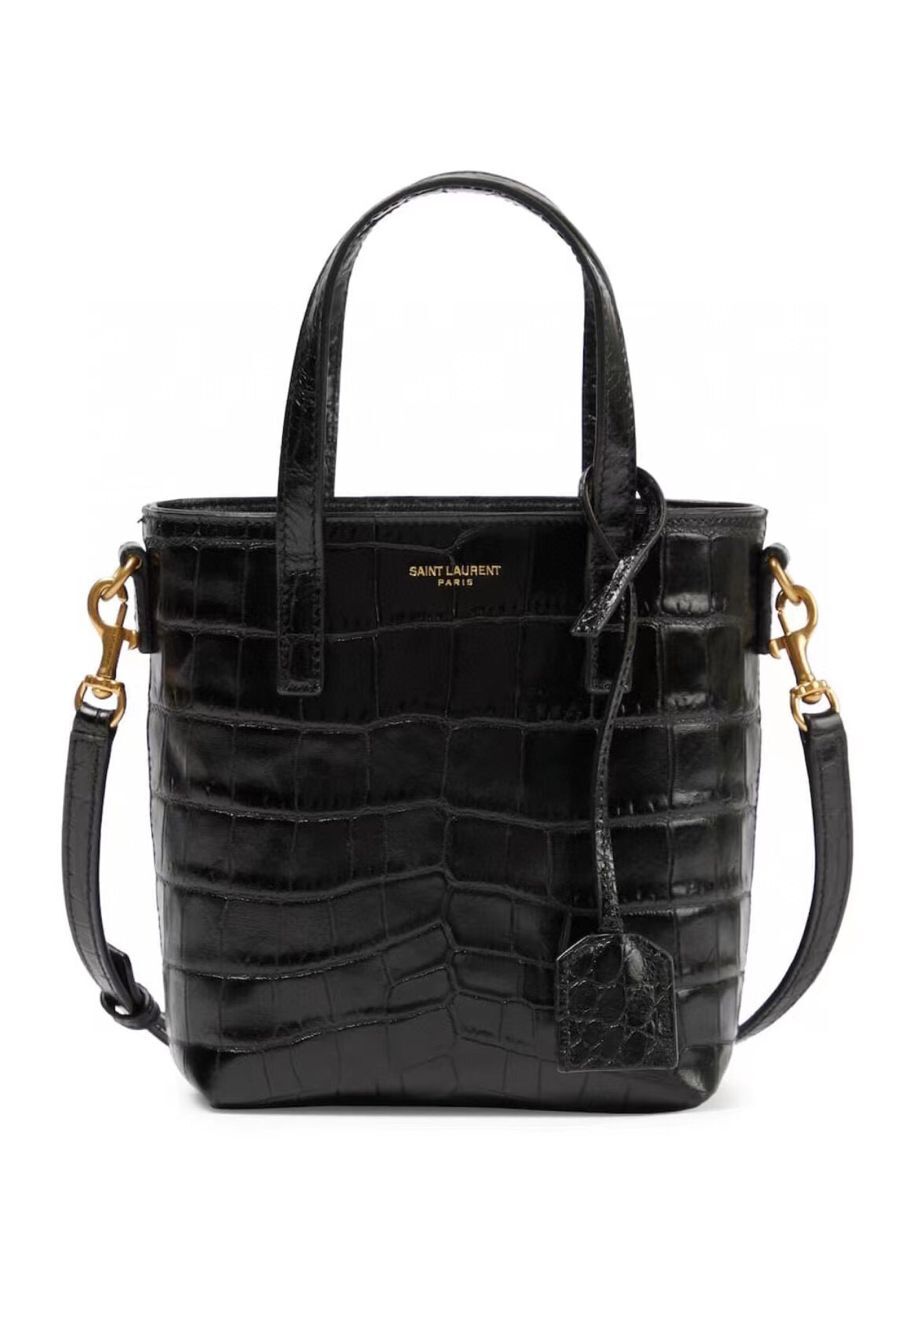 SAINT LAUREN shoulder bag IN CROCODILE-EMBOSSED LEATHER Y722366 black